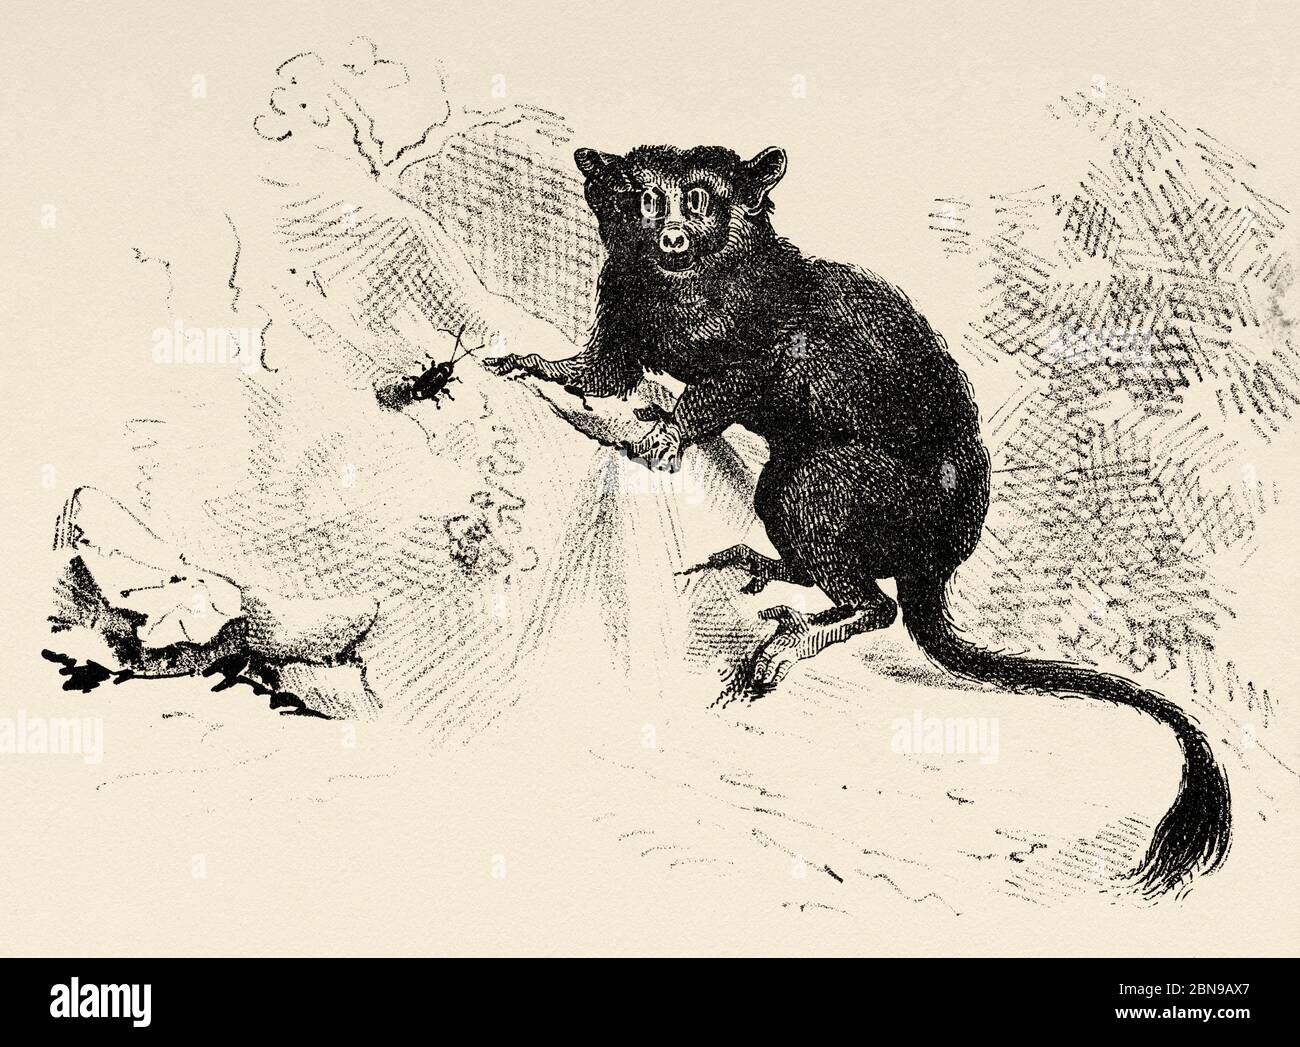 Galágidos (Galagidae) familia de primates estrepsirrinos conocidos como galagos. Pequeños animales nocturnos de África. Antiguo grabado animal ilustración siglo 19 Foto de stock